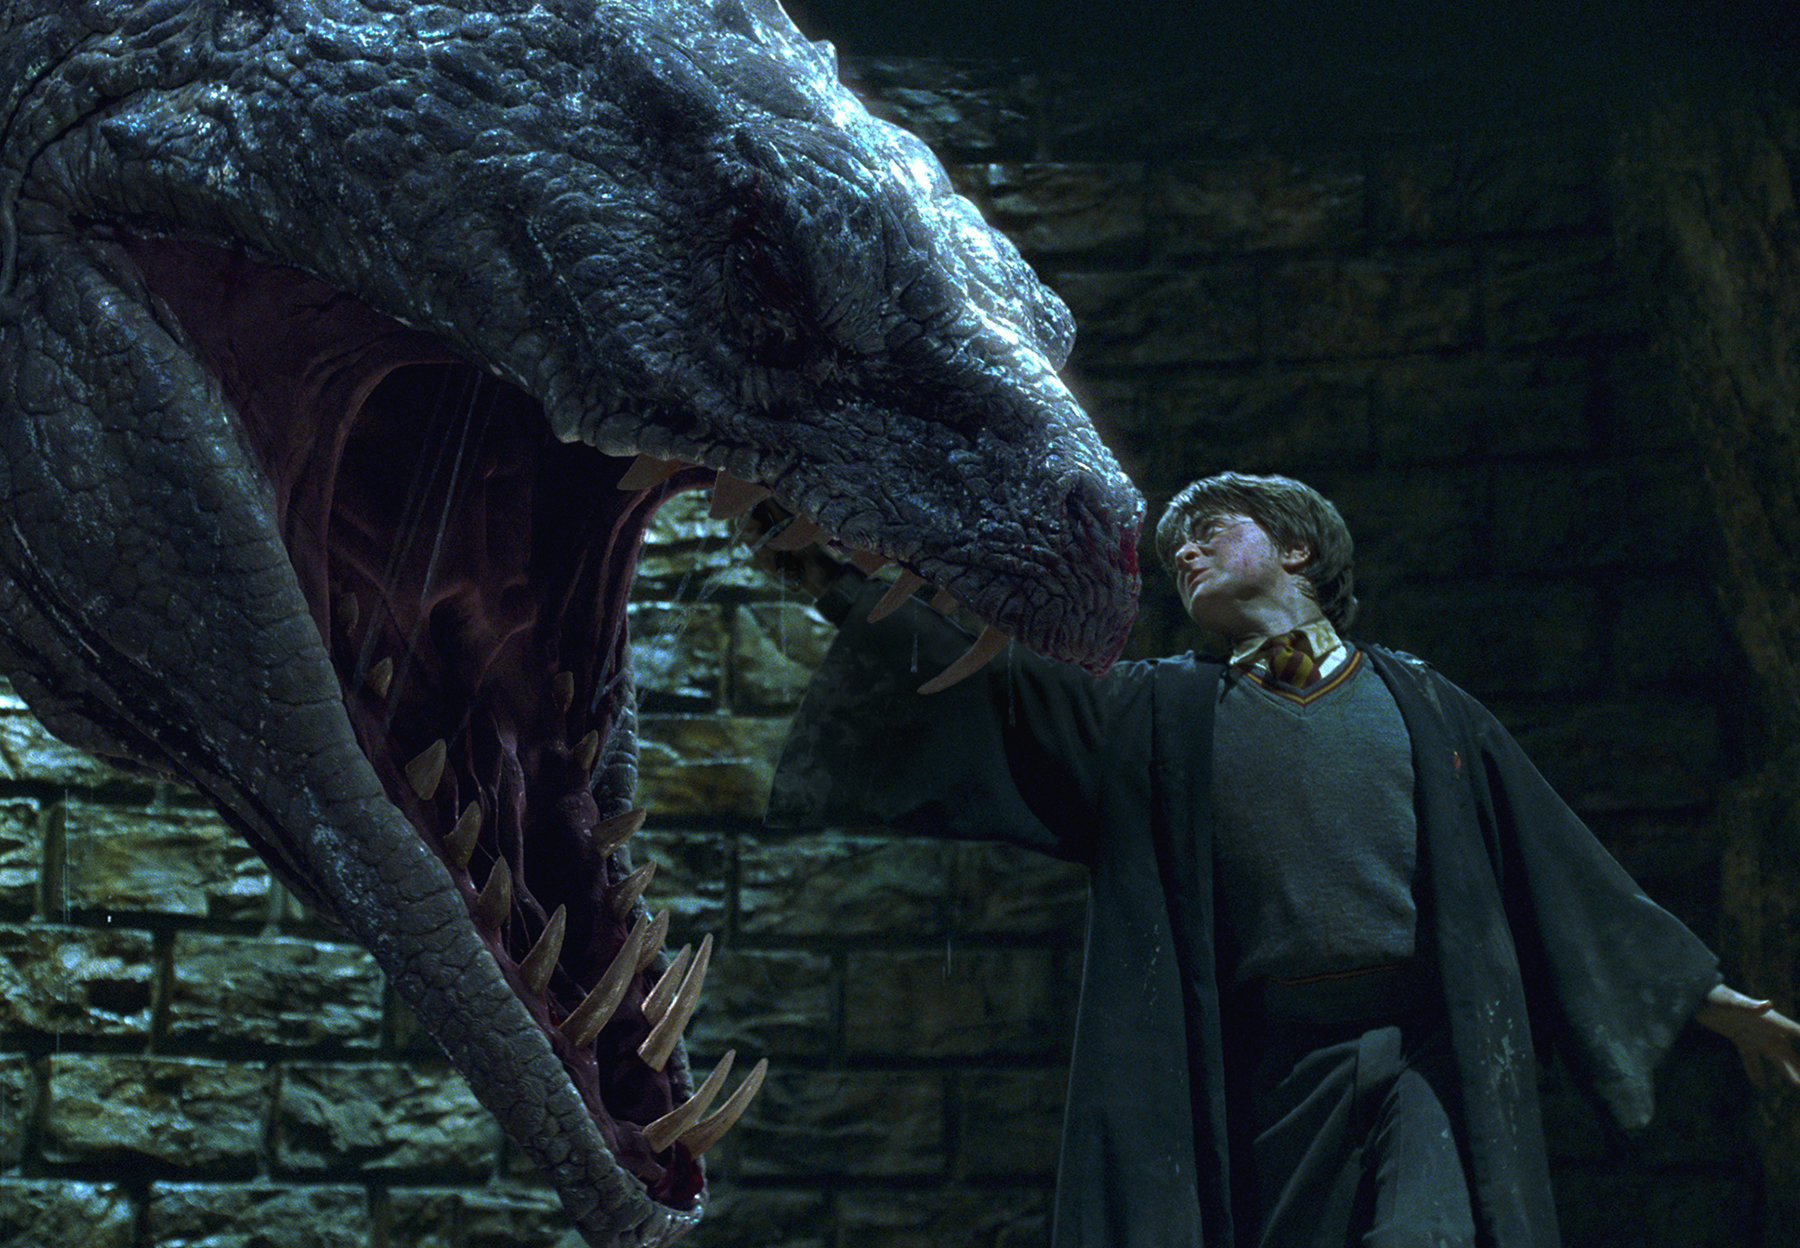 Harry Potter VS The Basilisk, Inside the Chamber of Secrets…